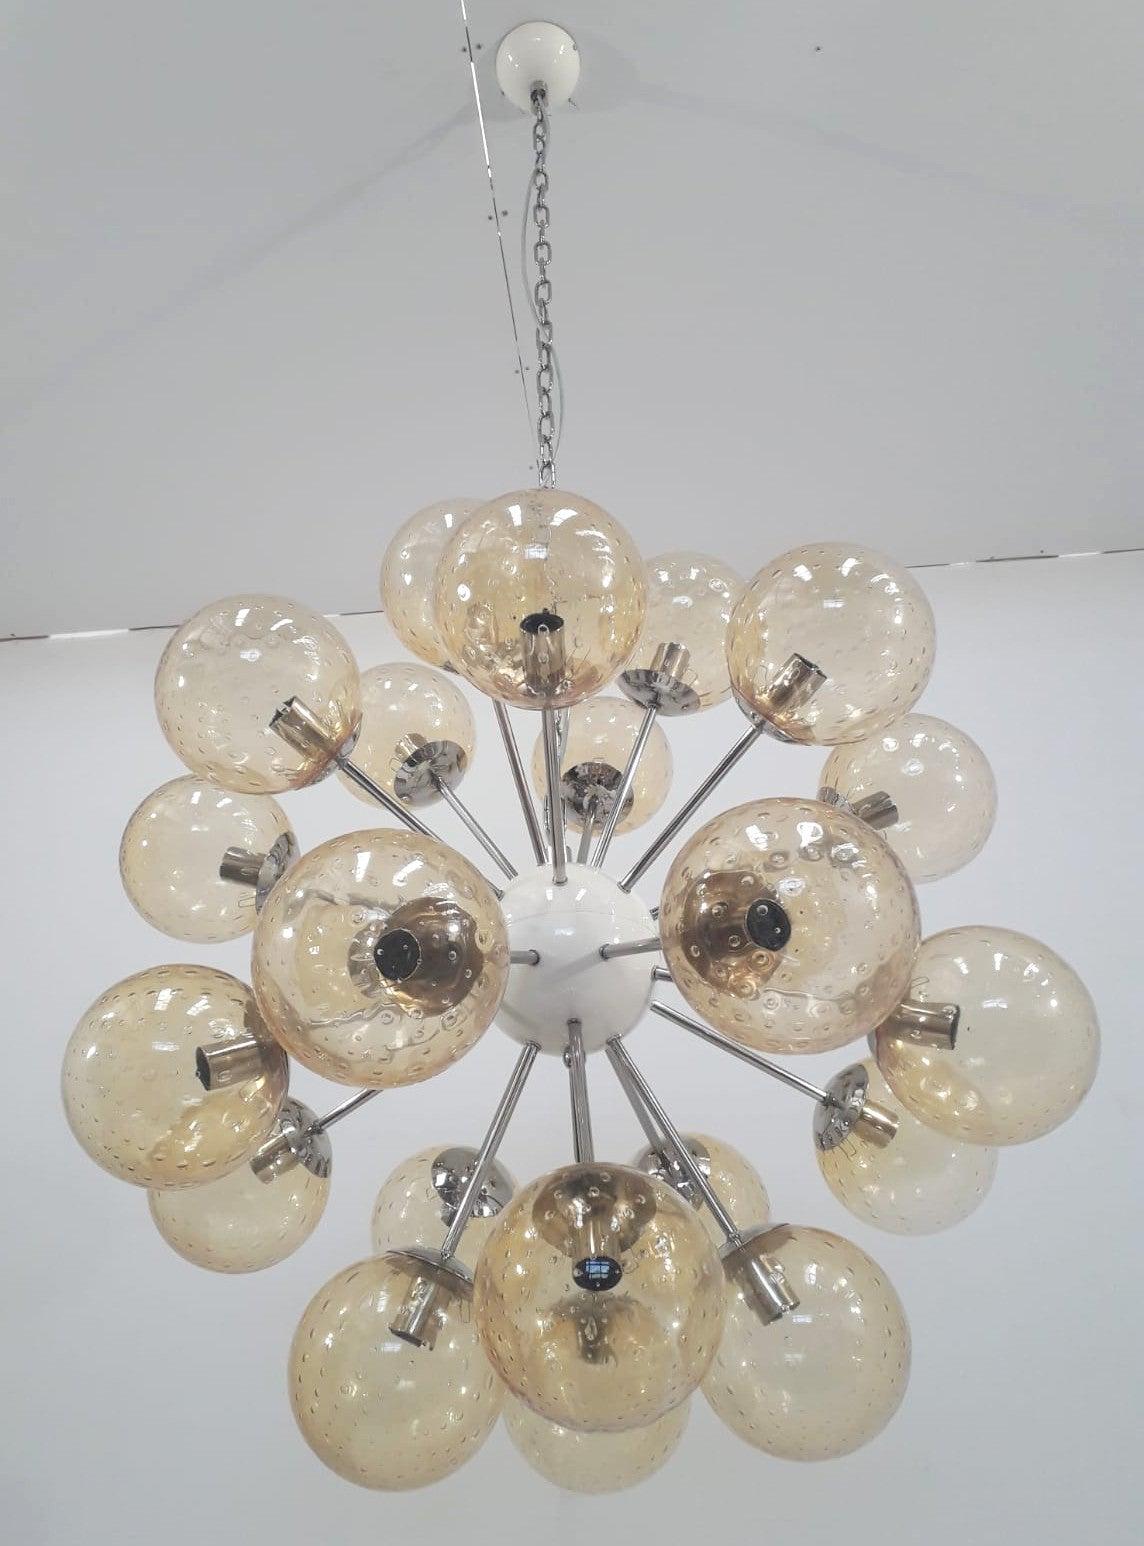 Lustre italien en forme de sputnik avec 24 globes en verre de Murano montés sur une structure métallique en finition nickel poli / Conçu par Fabio Bergomi pour Fabio Ltd / Fabriqué en Italie.
24 lampes / type E12 ou E14 / max 40W chacune
Mesures :